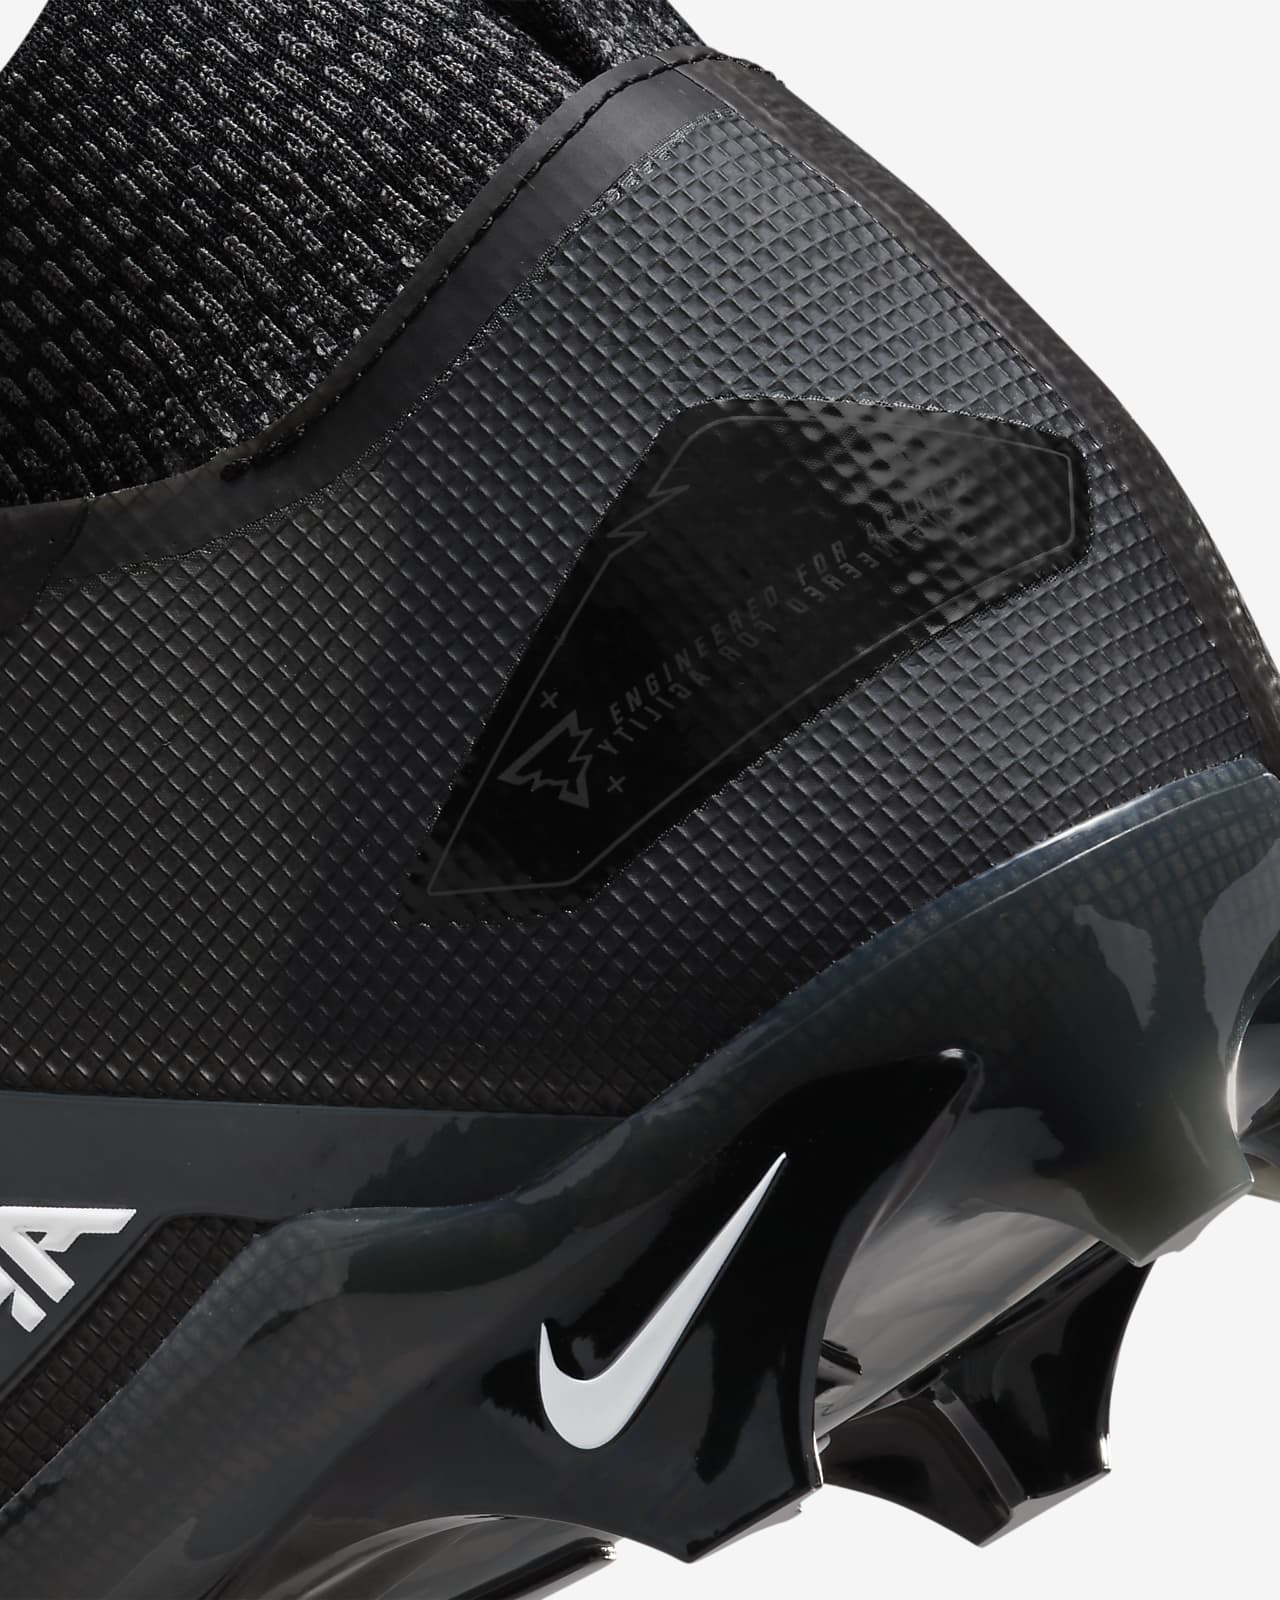 Nike Vapor Untouchable Pro 3 Cleat Release